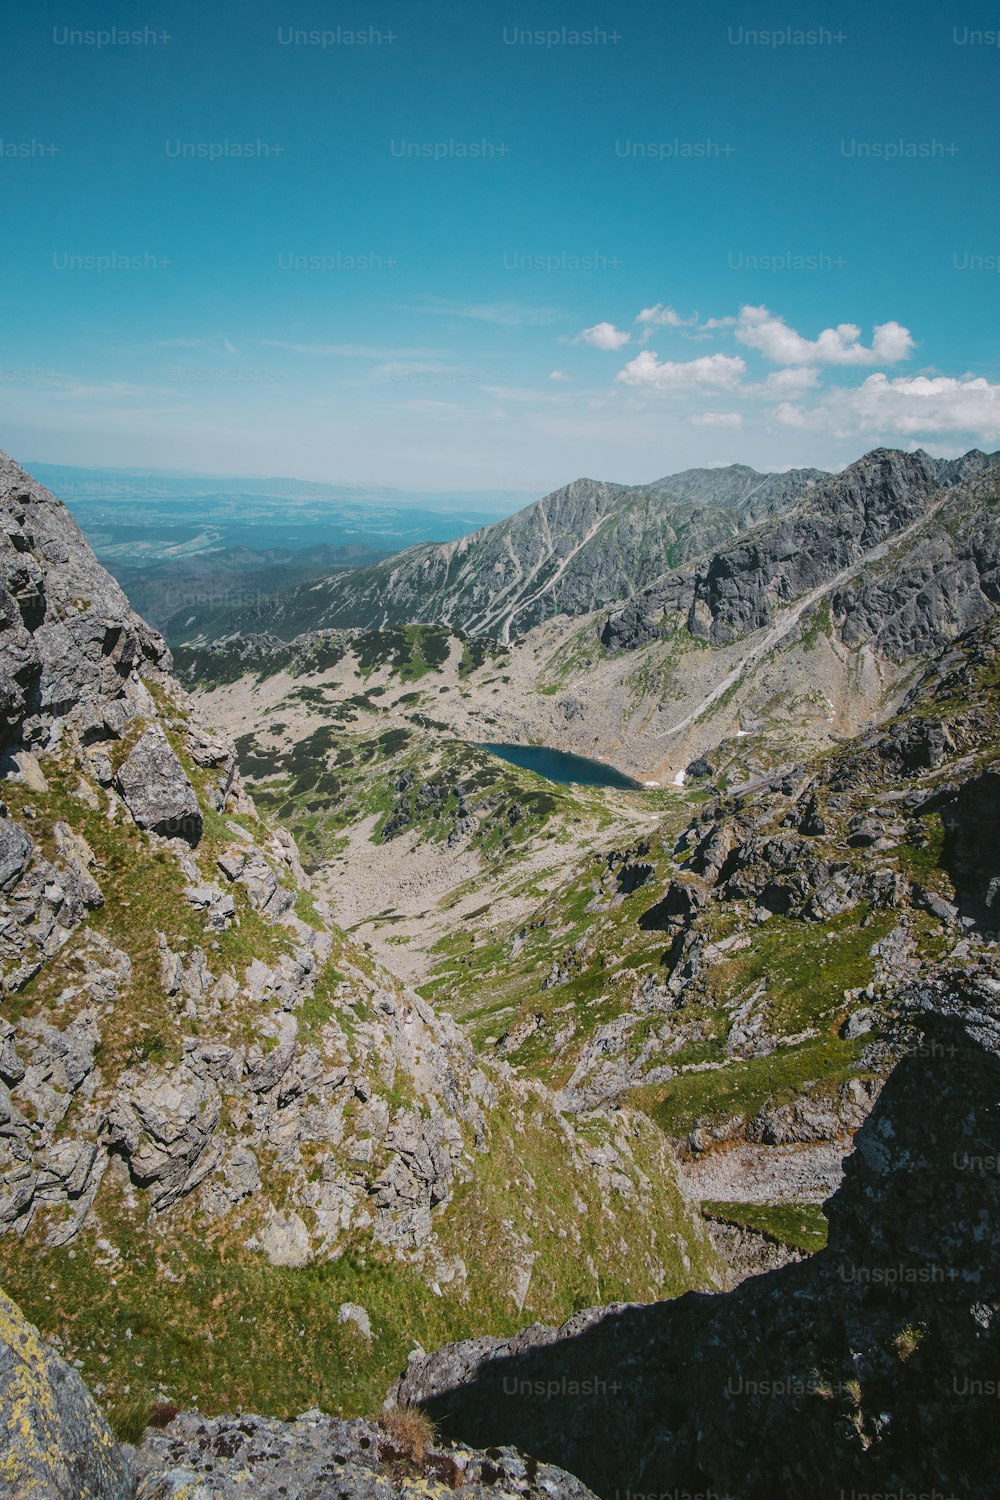 una vista di una catena montuosa con un lago nel mezzo